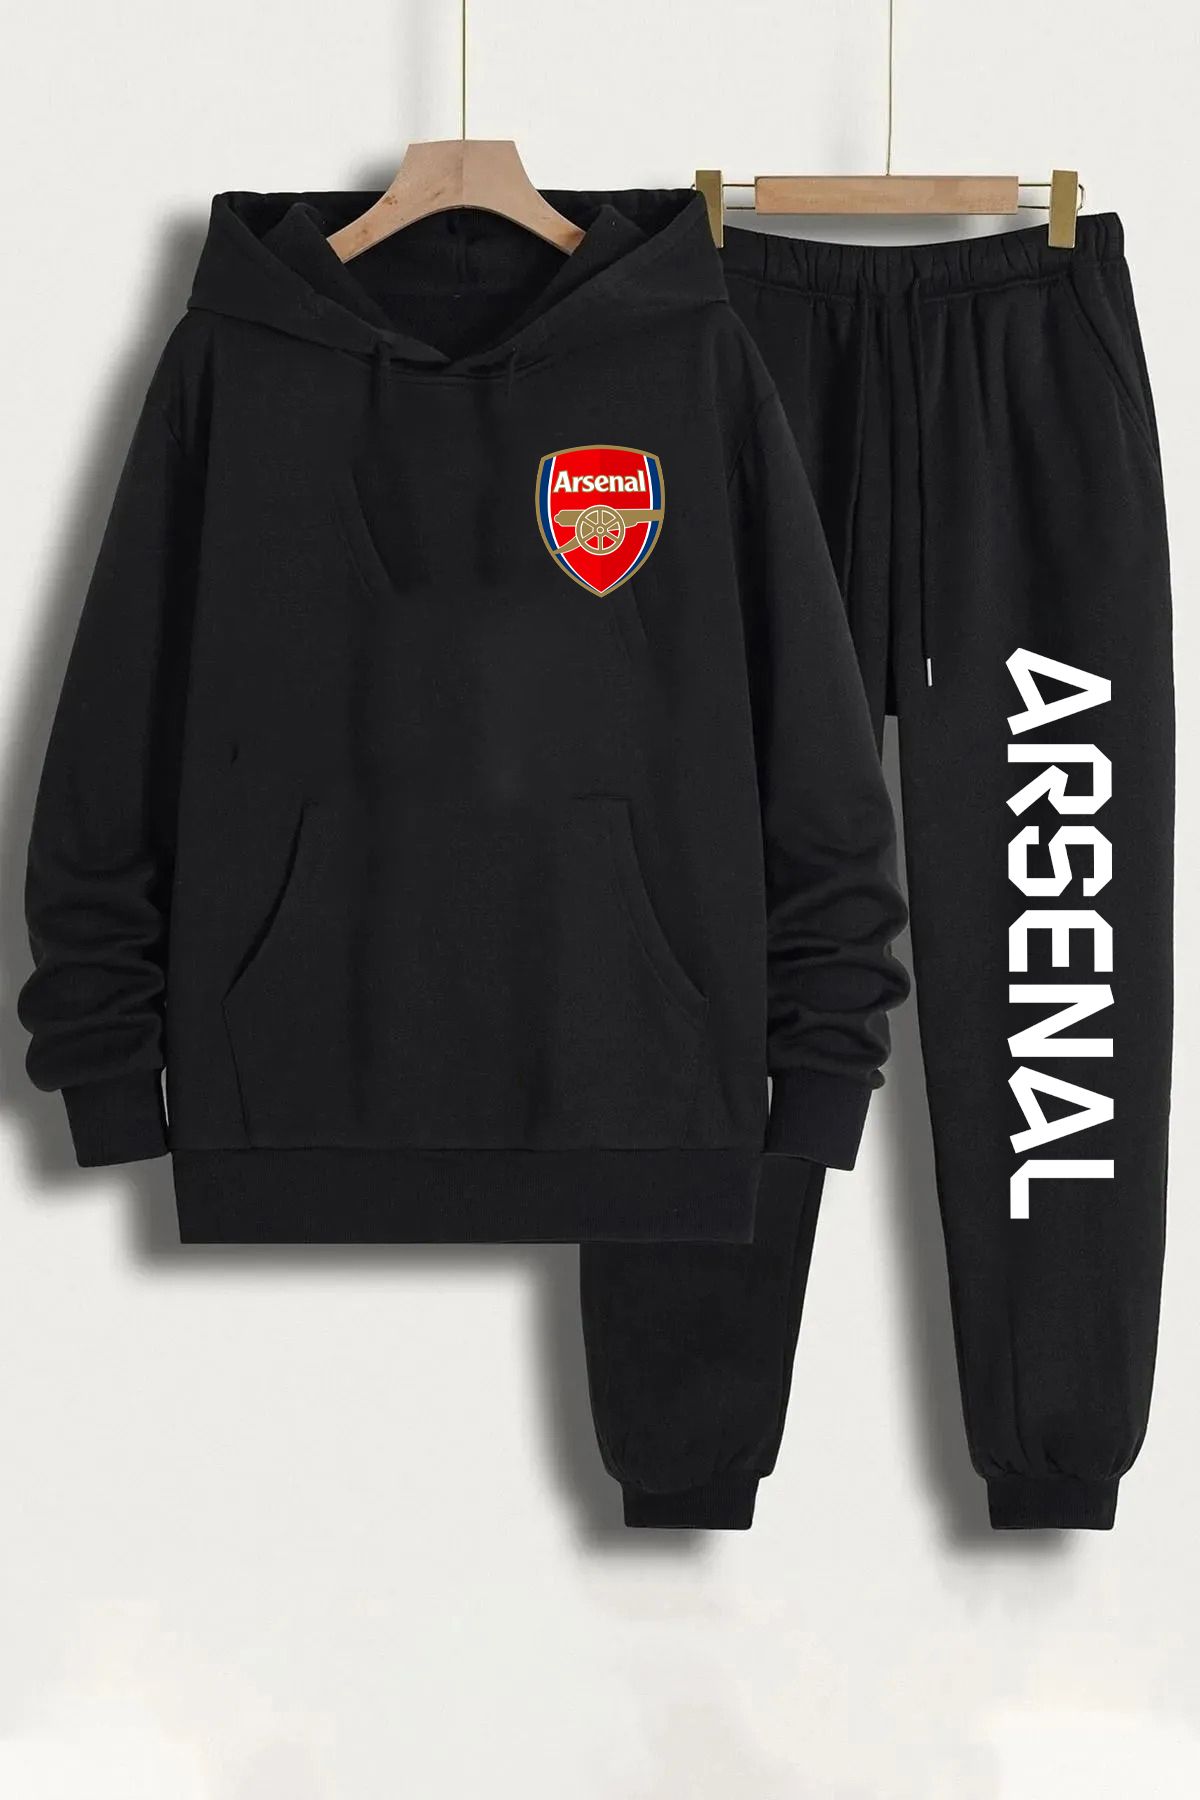 Pisa Art Arsenal Sweatshirt + Eşofman Altı Takım